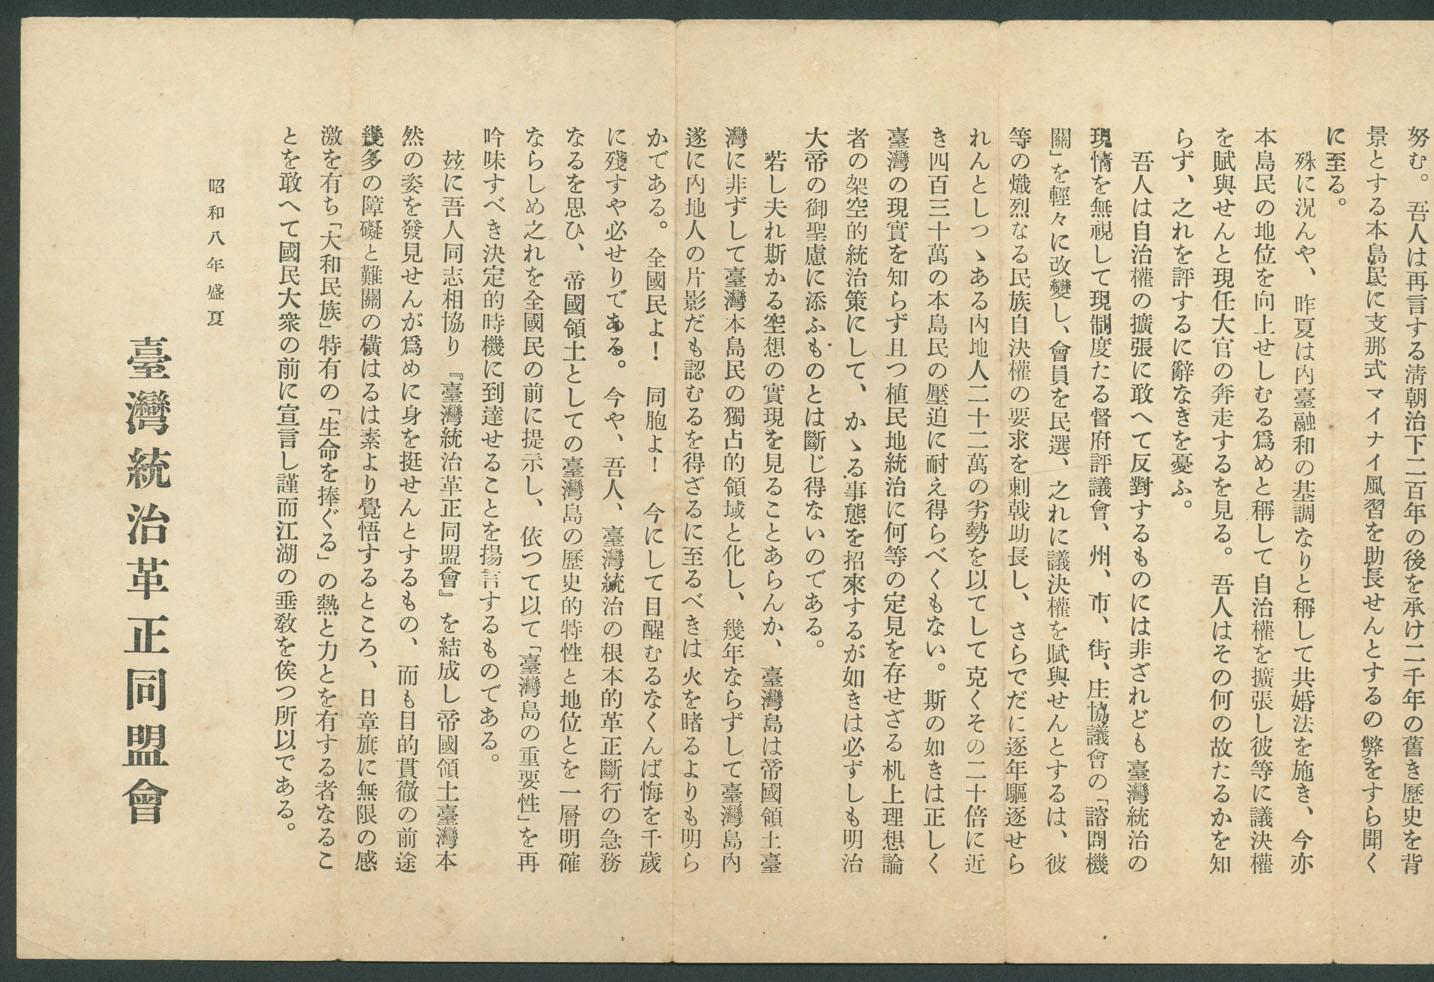 副系列名：日據至戰後初期史料案卷名：其他件名：昭和8年（1933年）臺灣統治革正同盟會印行之〈宣言〉